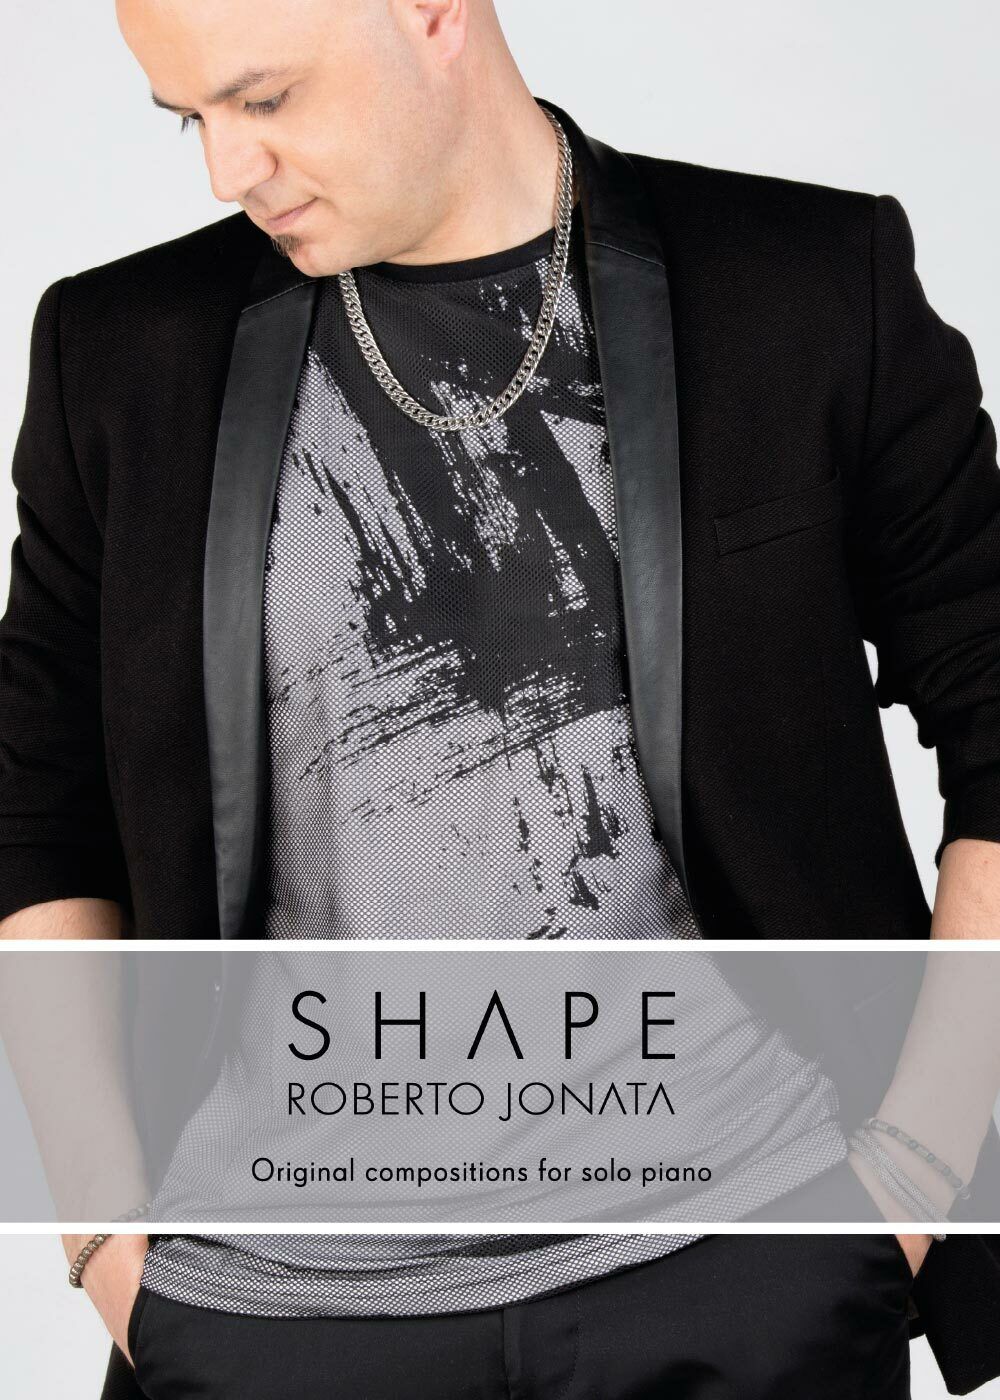 Shape. Original compositions per solo piano di Roberto Jonata,  2017,  Youcanpri